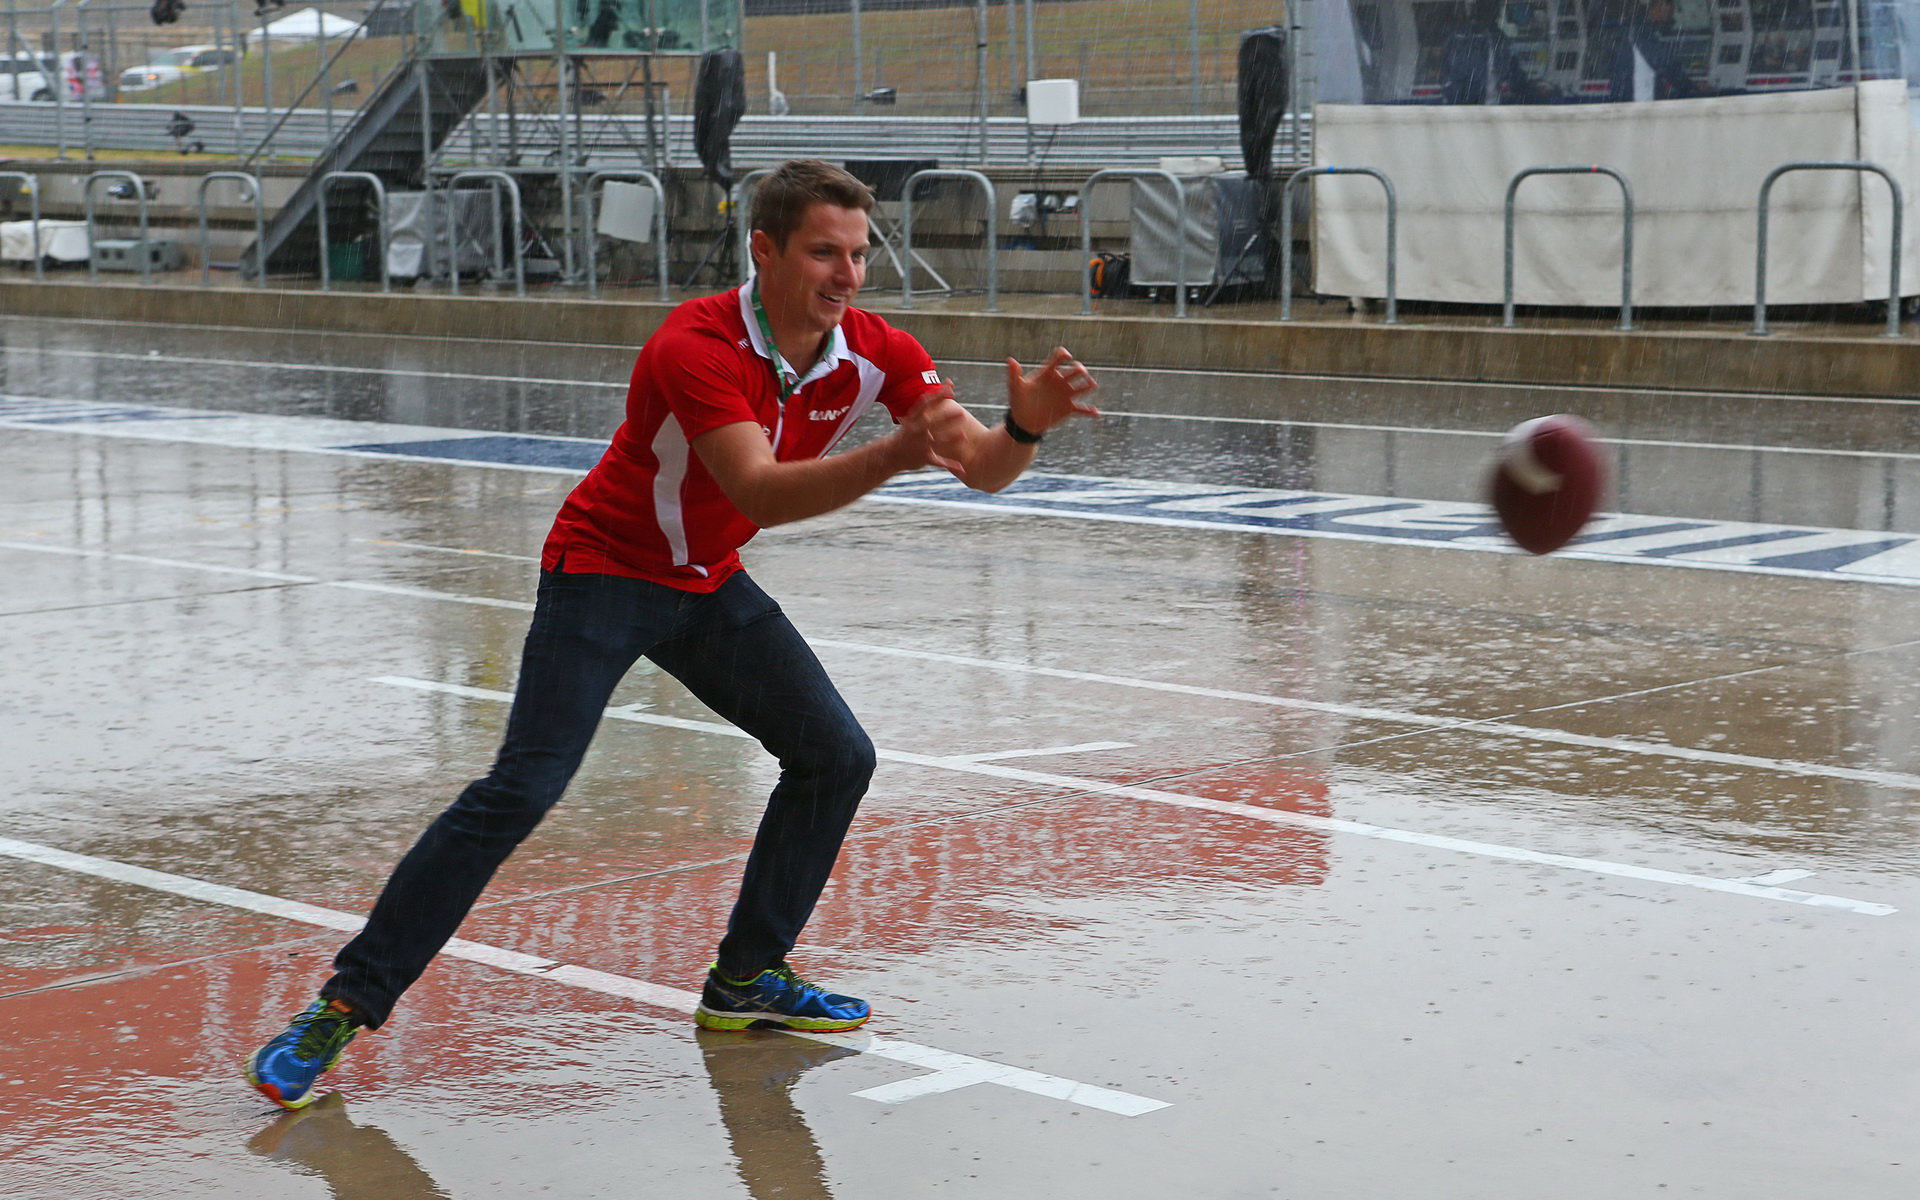 Jordan King vyplňuje čas v dešti hraním amerického fotbalu v Austinu